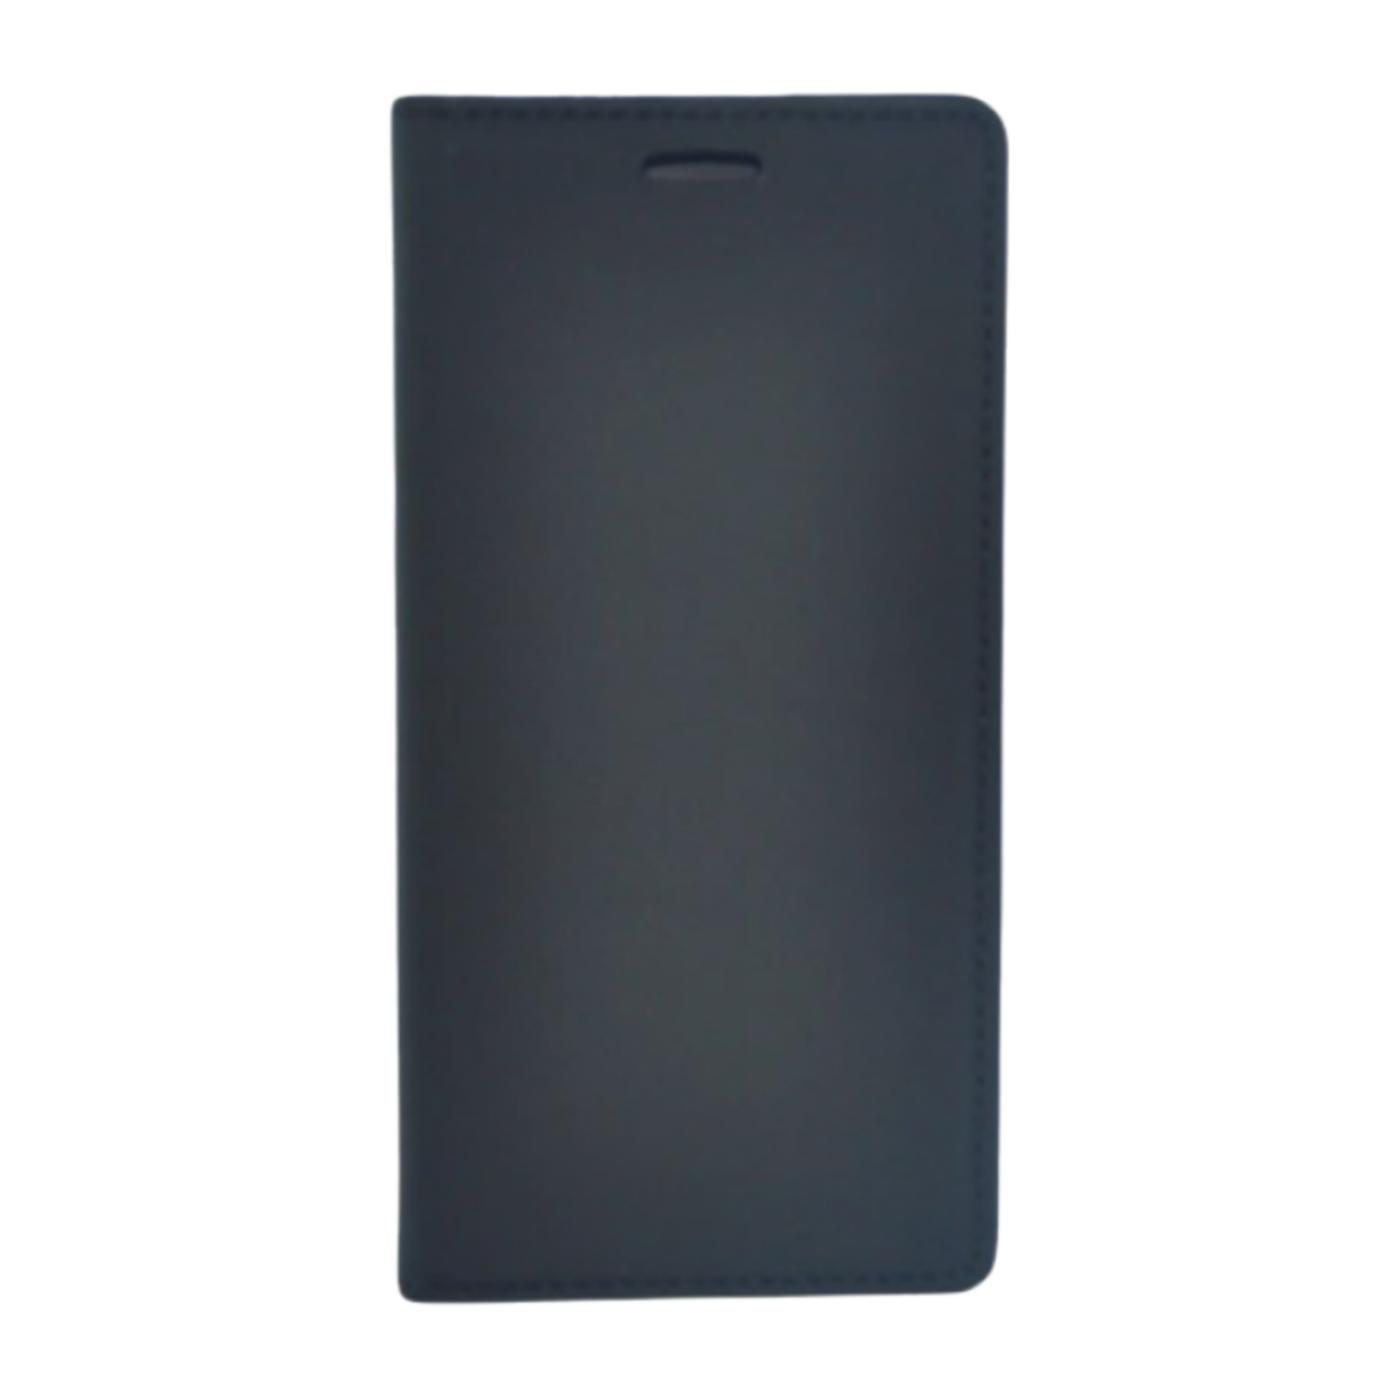 Futrola za mobitel Samsung S6, crna